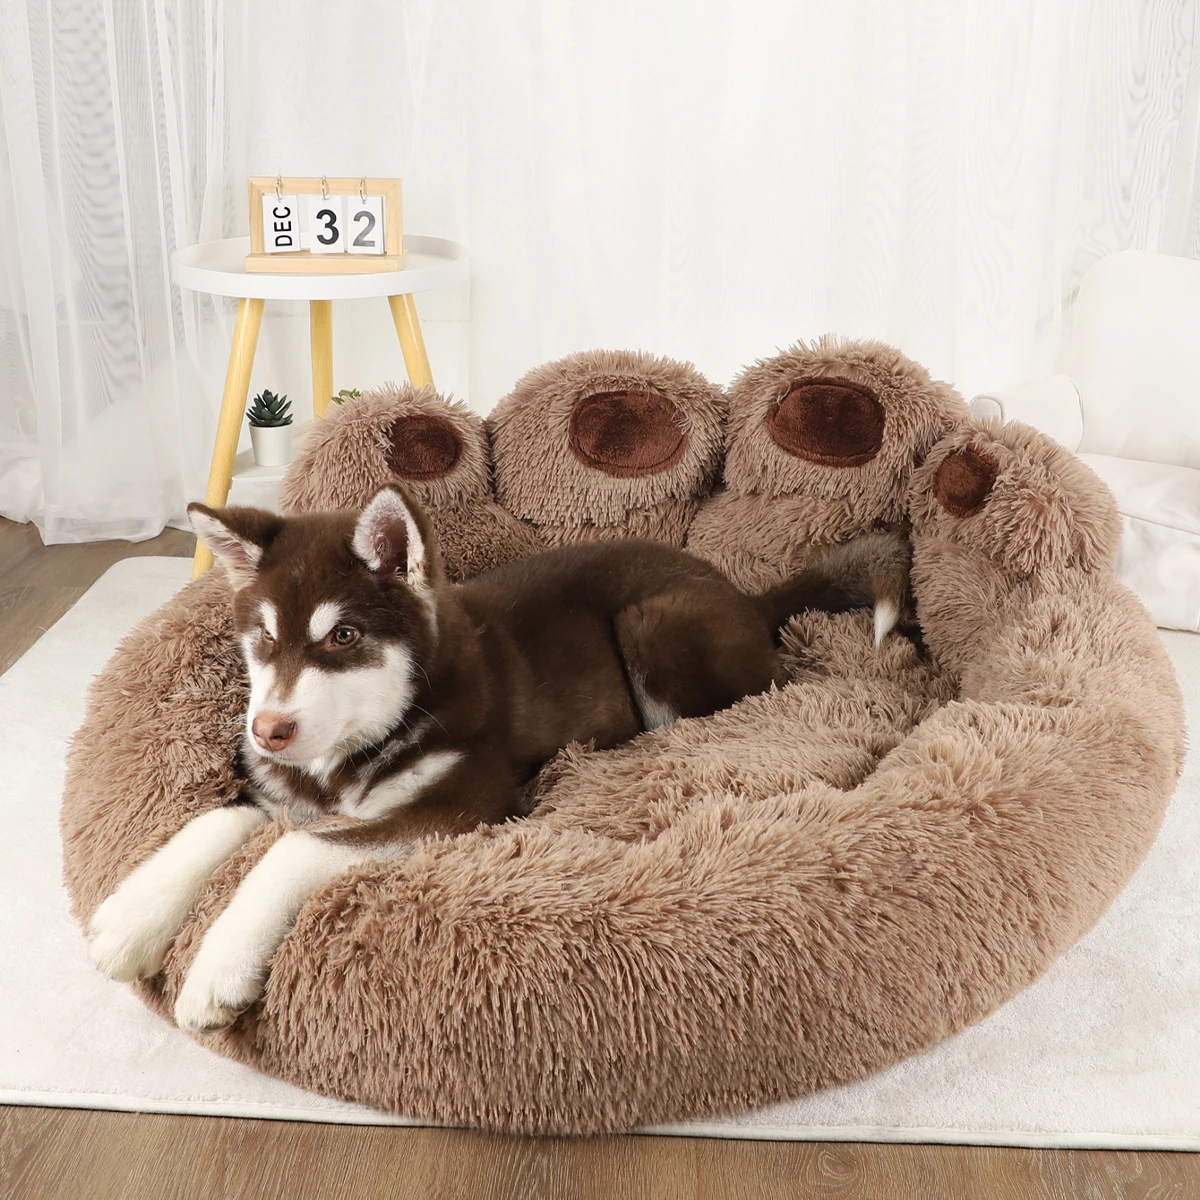 Lits-canap-s-pour-chiens-de-petite-taille-accessoires-chauds-tapis-de-lit-pour-grands-chiens-1